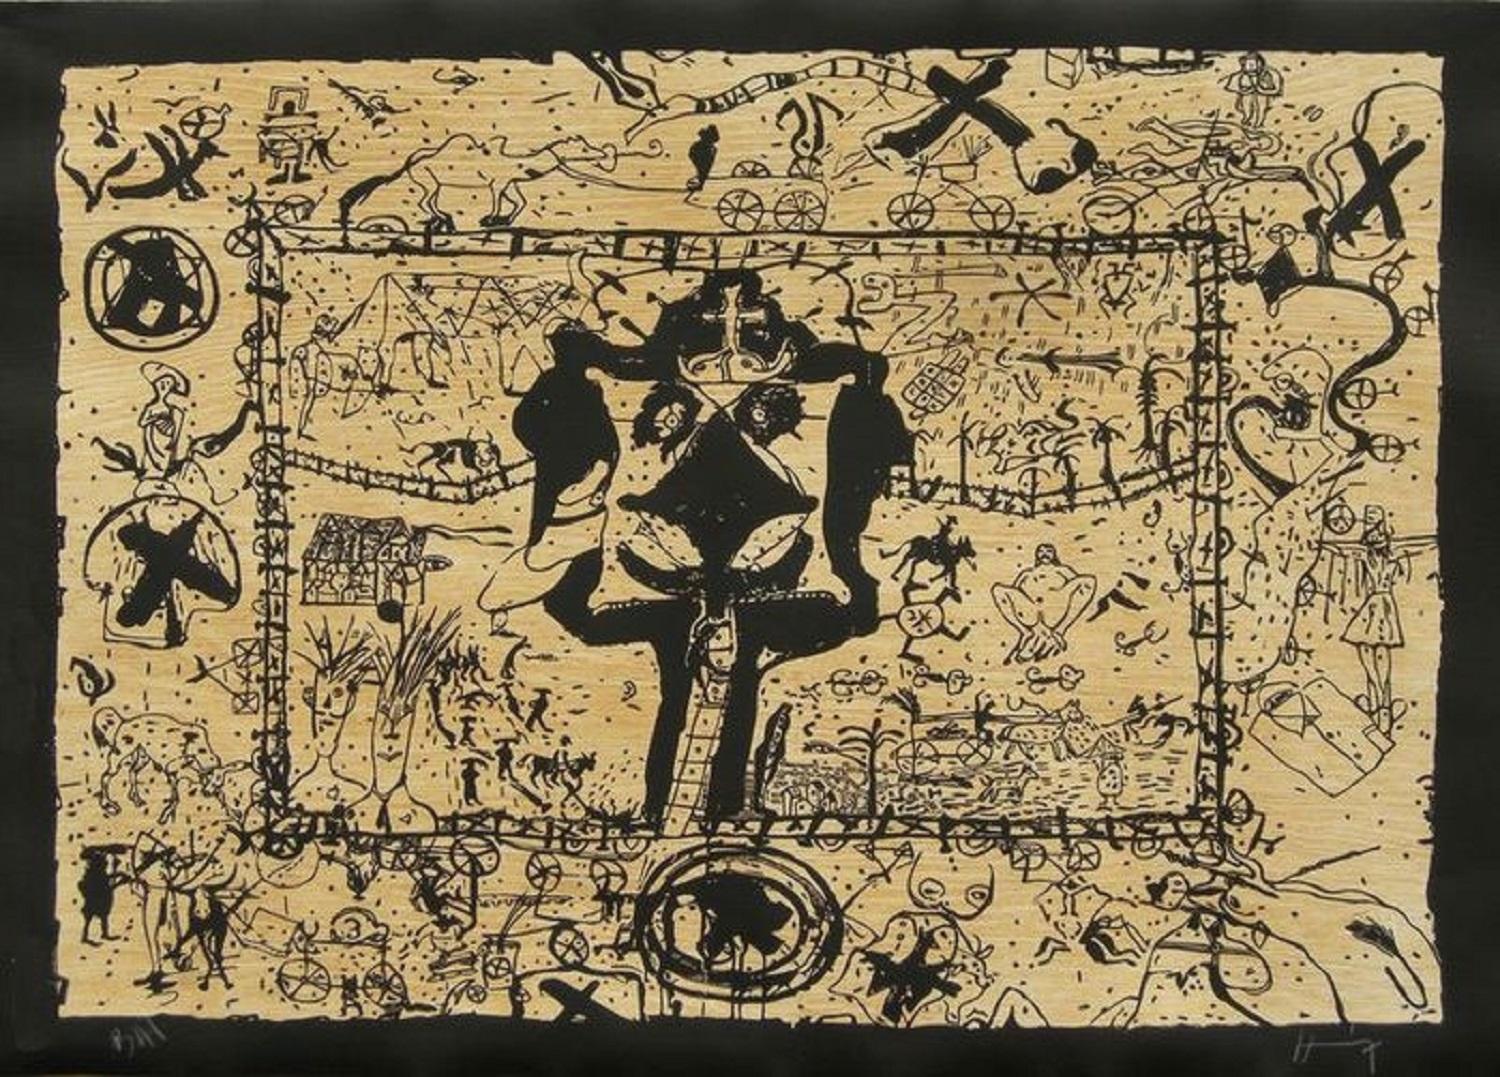 Sergio Hernández (Mexique, 1957)
Corral I", 2011
gravure sur bois sur papier Velin Arches 300 g.
29.6 x 41.4 in. (75 x 105 cm)
Edition de 10
Non encadré














